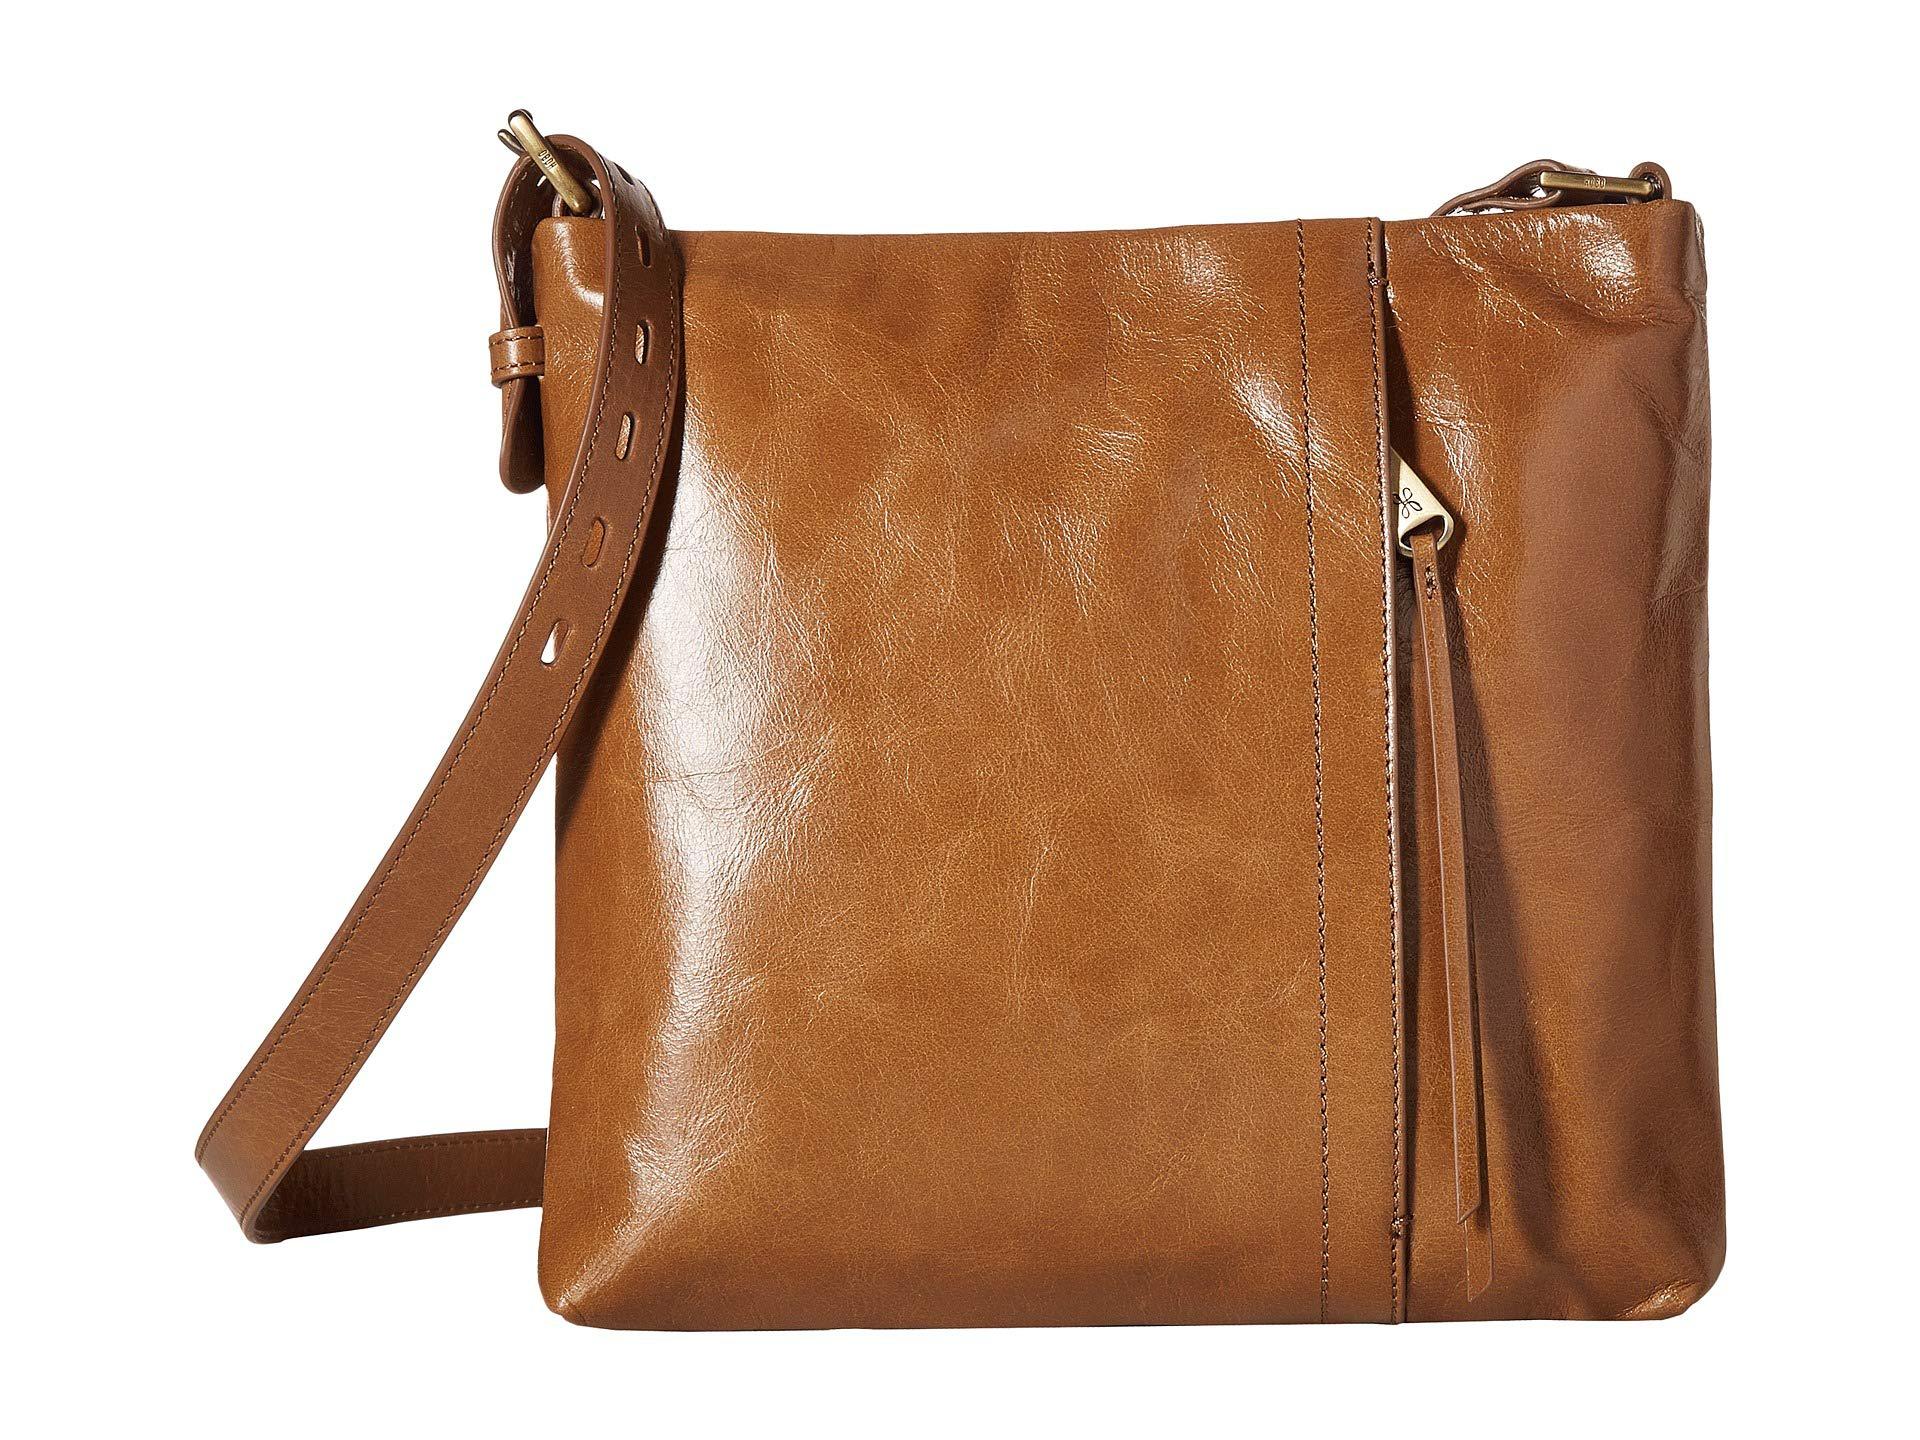 Hobo International Leather Drifter (mink) Cross Body Handbags in Brown - Lyst